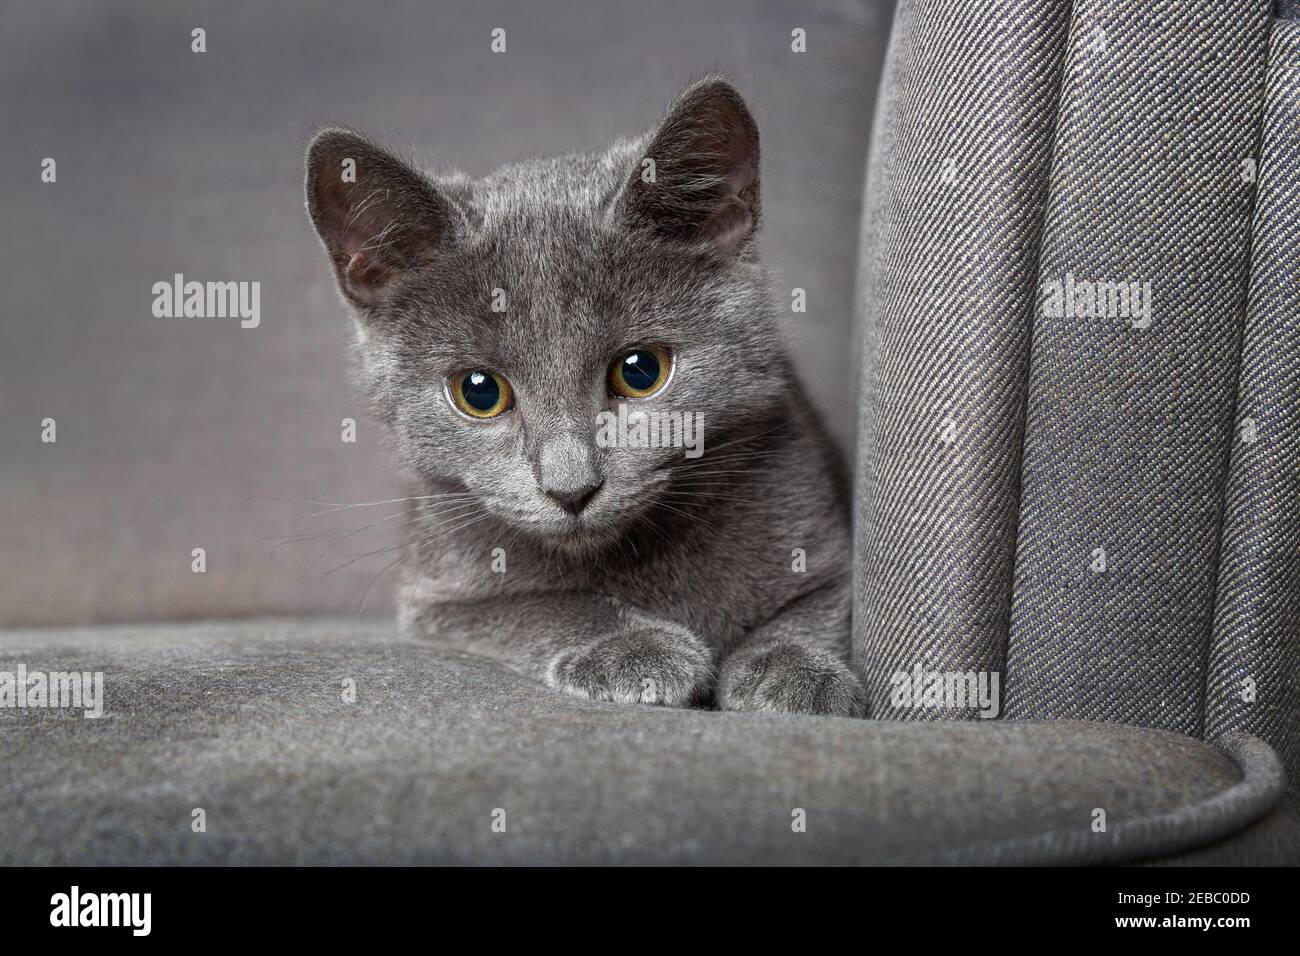 Beautiful gray playful kitten on the armchair Stock Photo